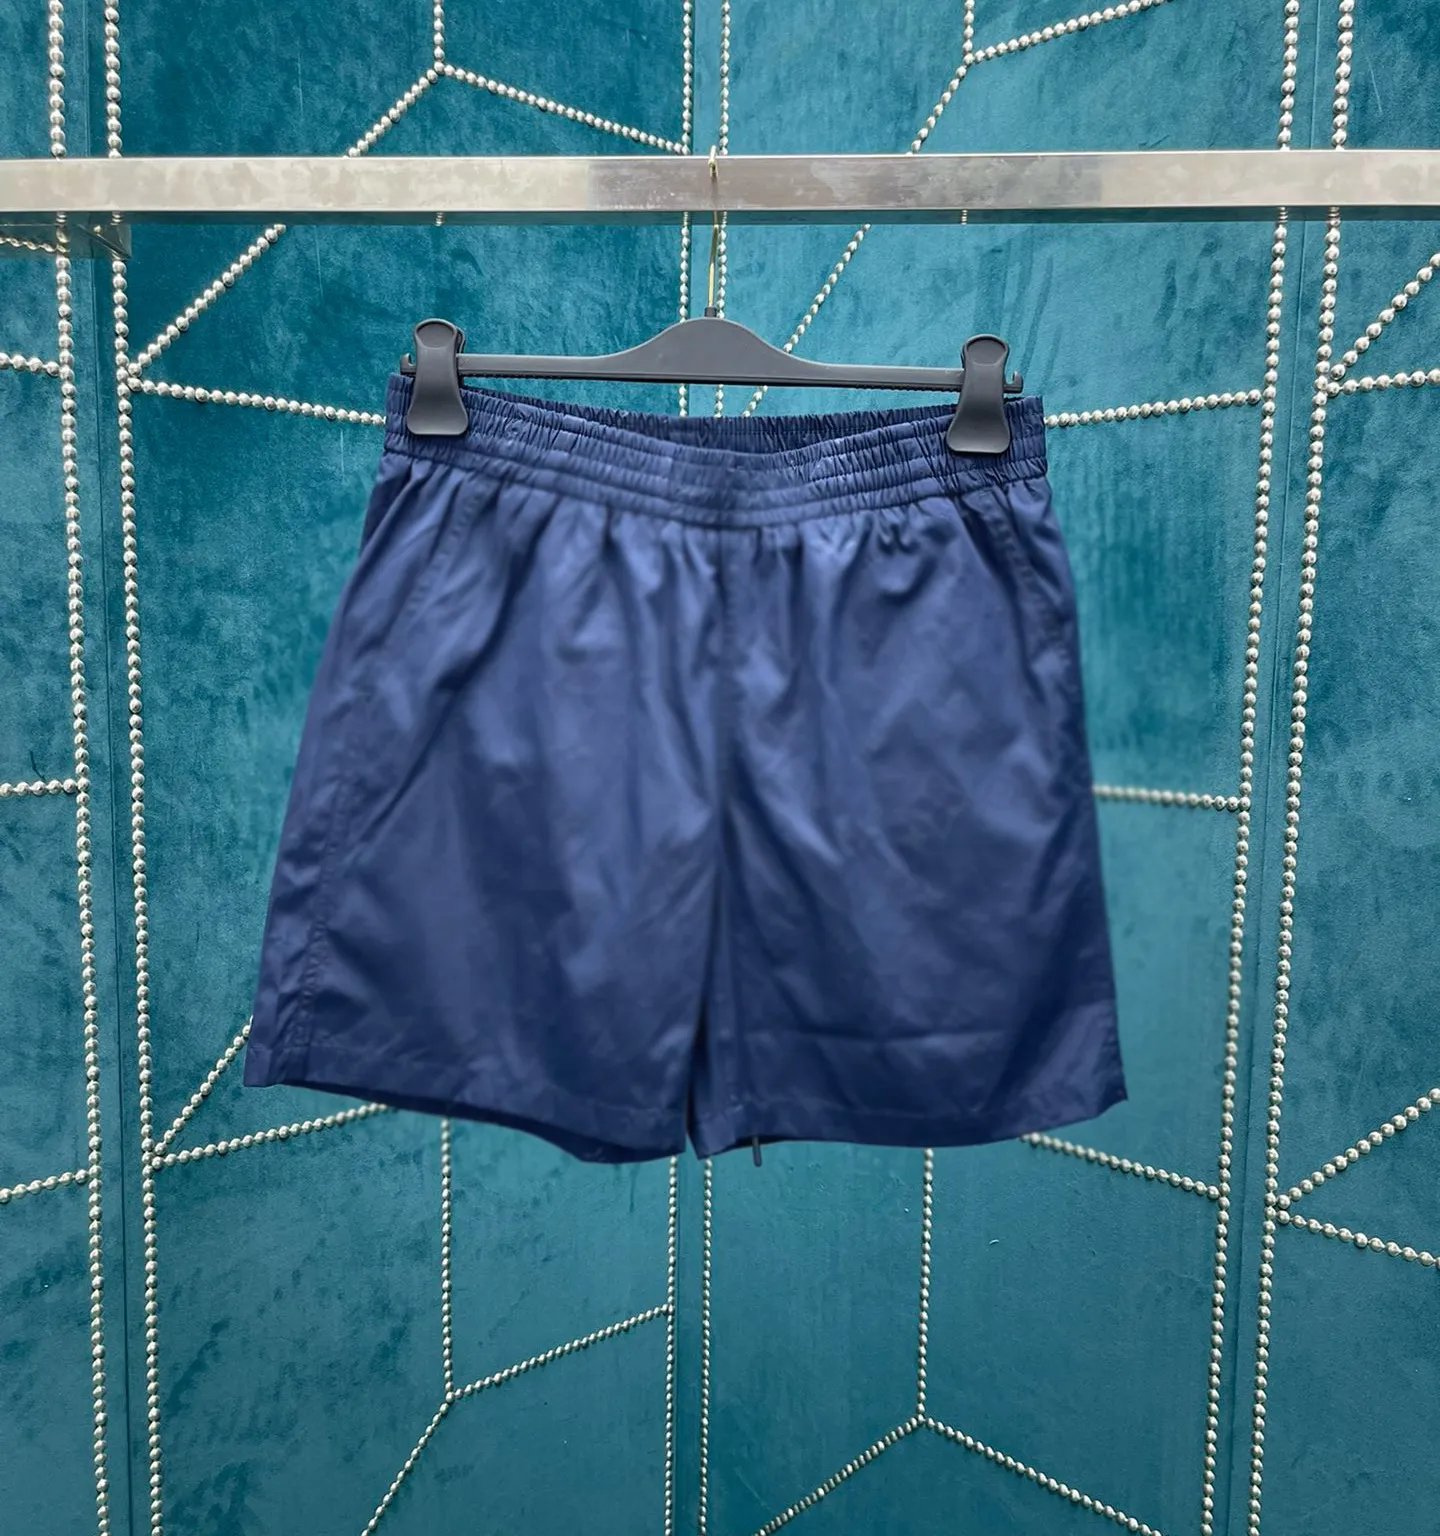 Pantaloni taglie forti da uomo Girocollo ricamato e stampato in stile polare estivo con puro cotone da strada 5F654t